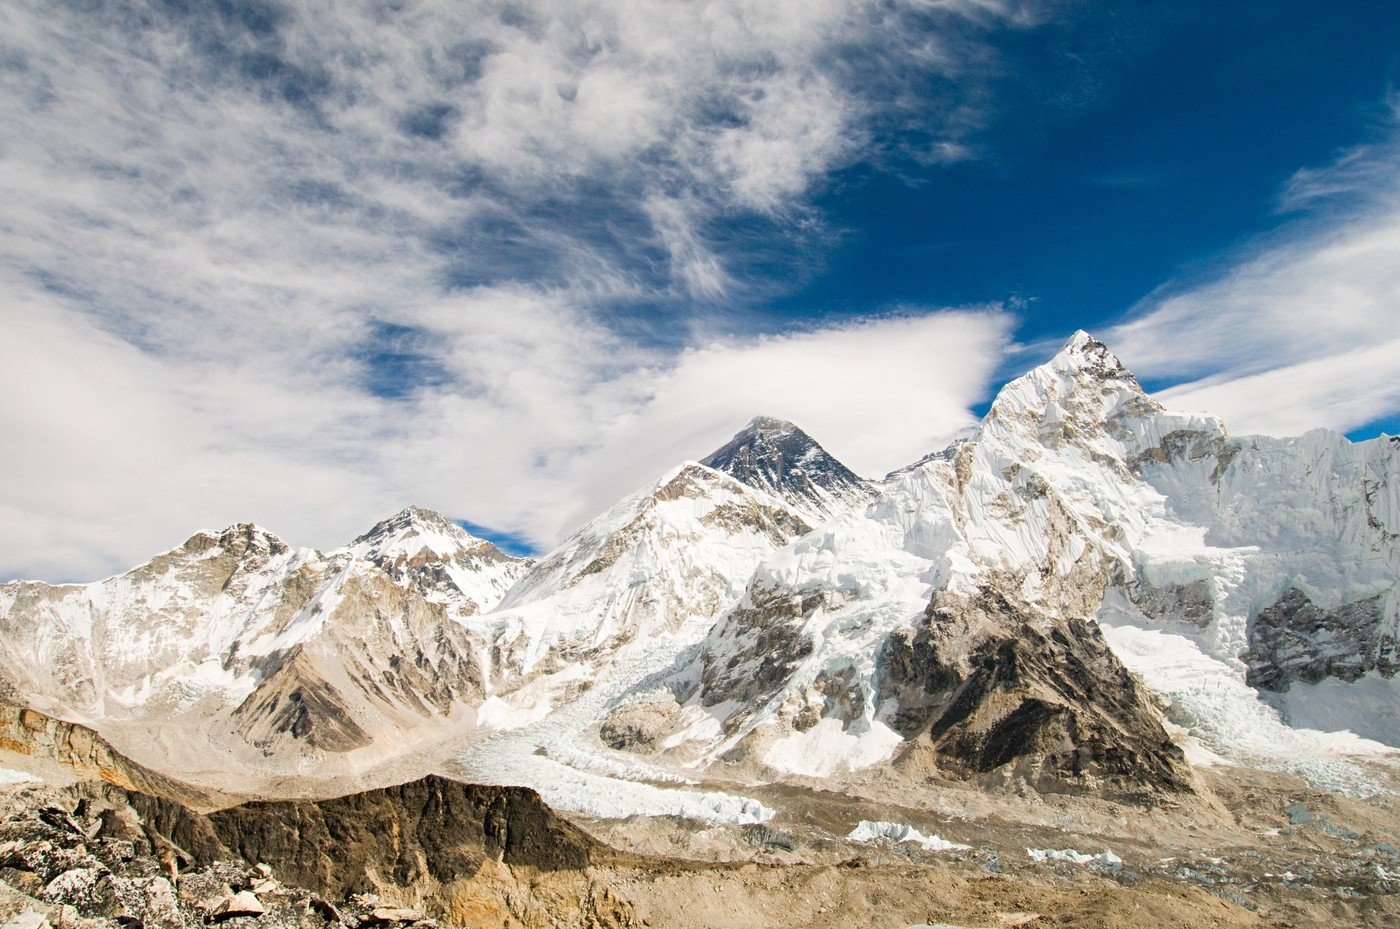 Ennyi holttestet találtak a hónapban a Mount Everesten: több mint 20 millió forint lehozni egy tetemet a hegyről